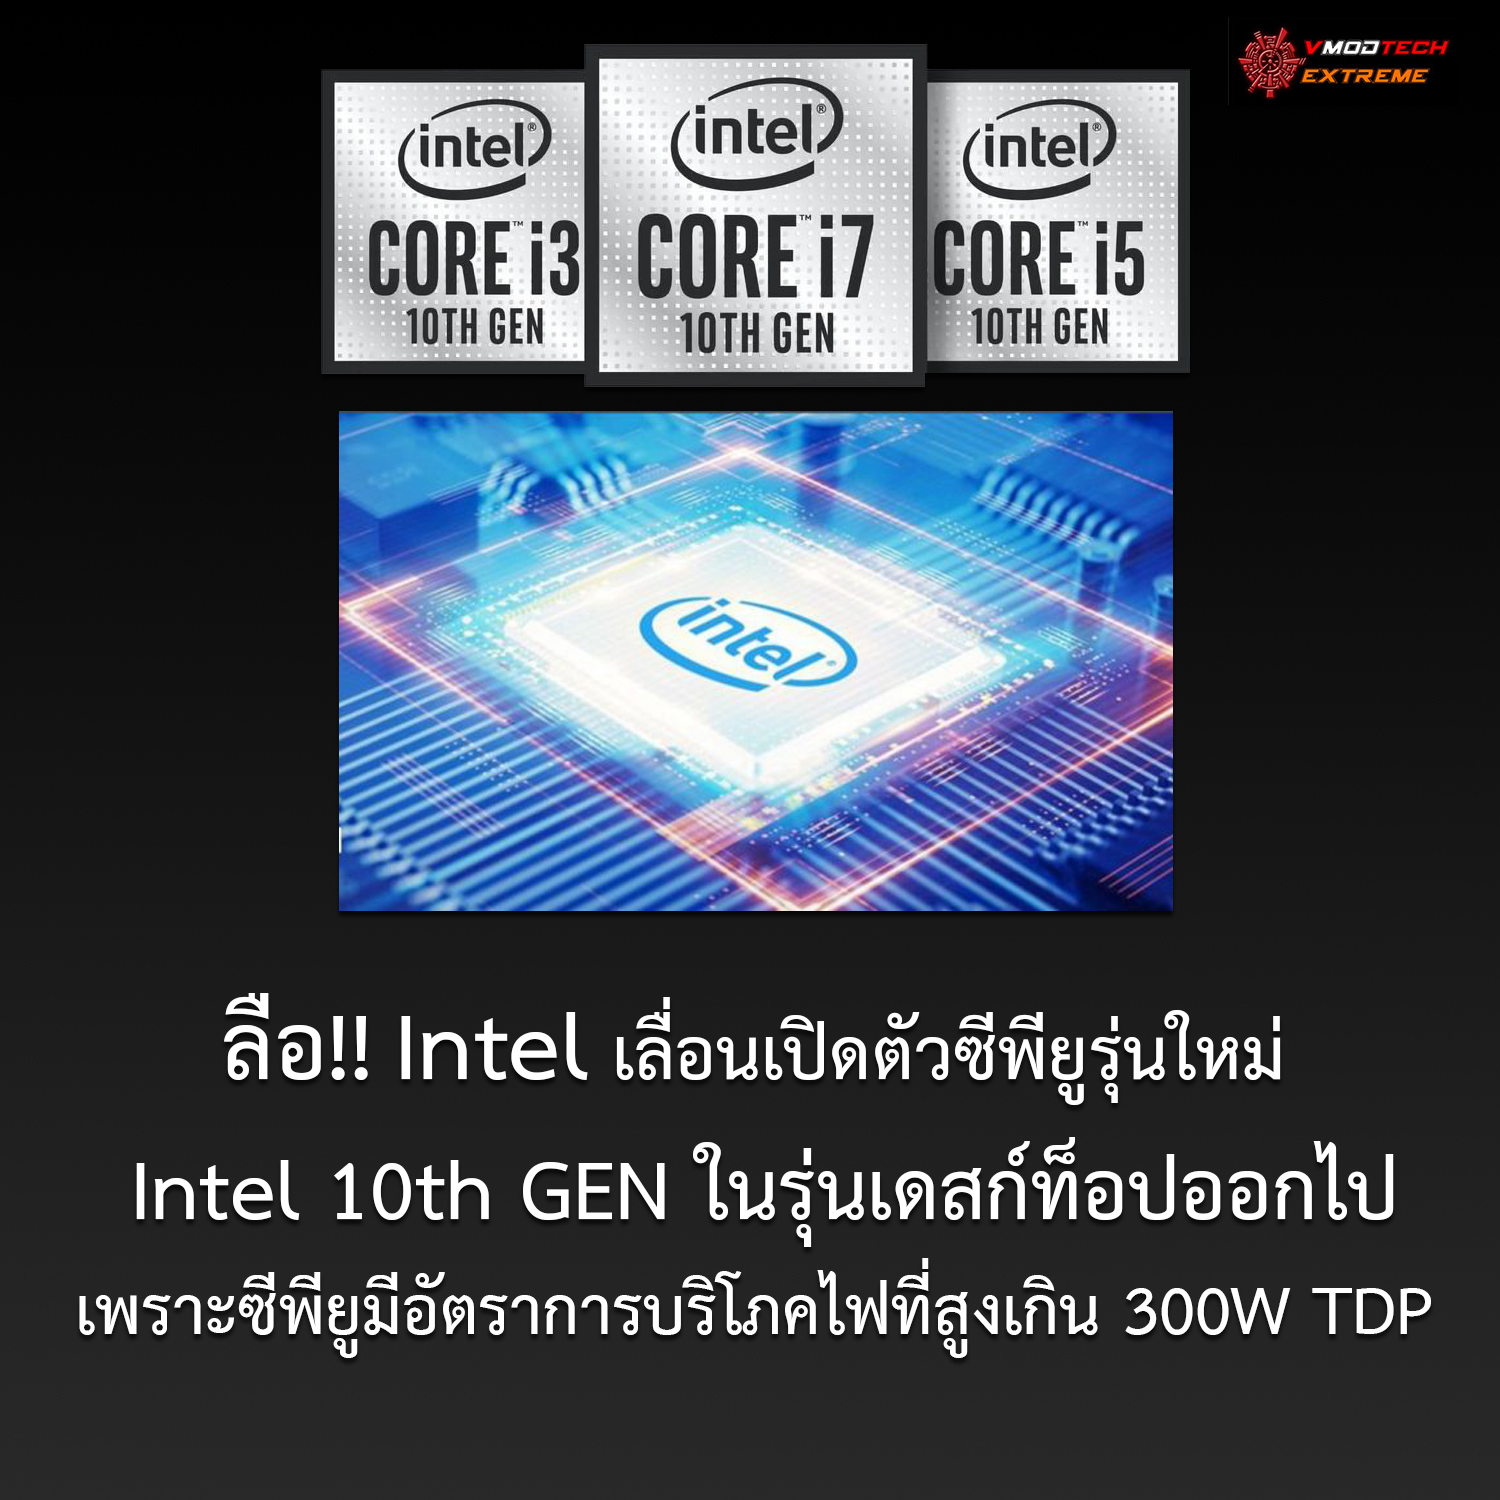 intel delayed 10th gen ลือ!! Intel เลื่อนเปิดตัวซีพียูรุ่นใหม่ Intel 10th GEN ในรุ่นเดสก์ท็อปออกไปเพราะซีพียูมีอัตราการบริโภคไฟที่สูงเกิน 300W TDP 